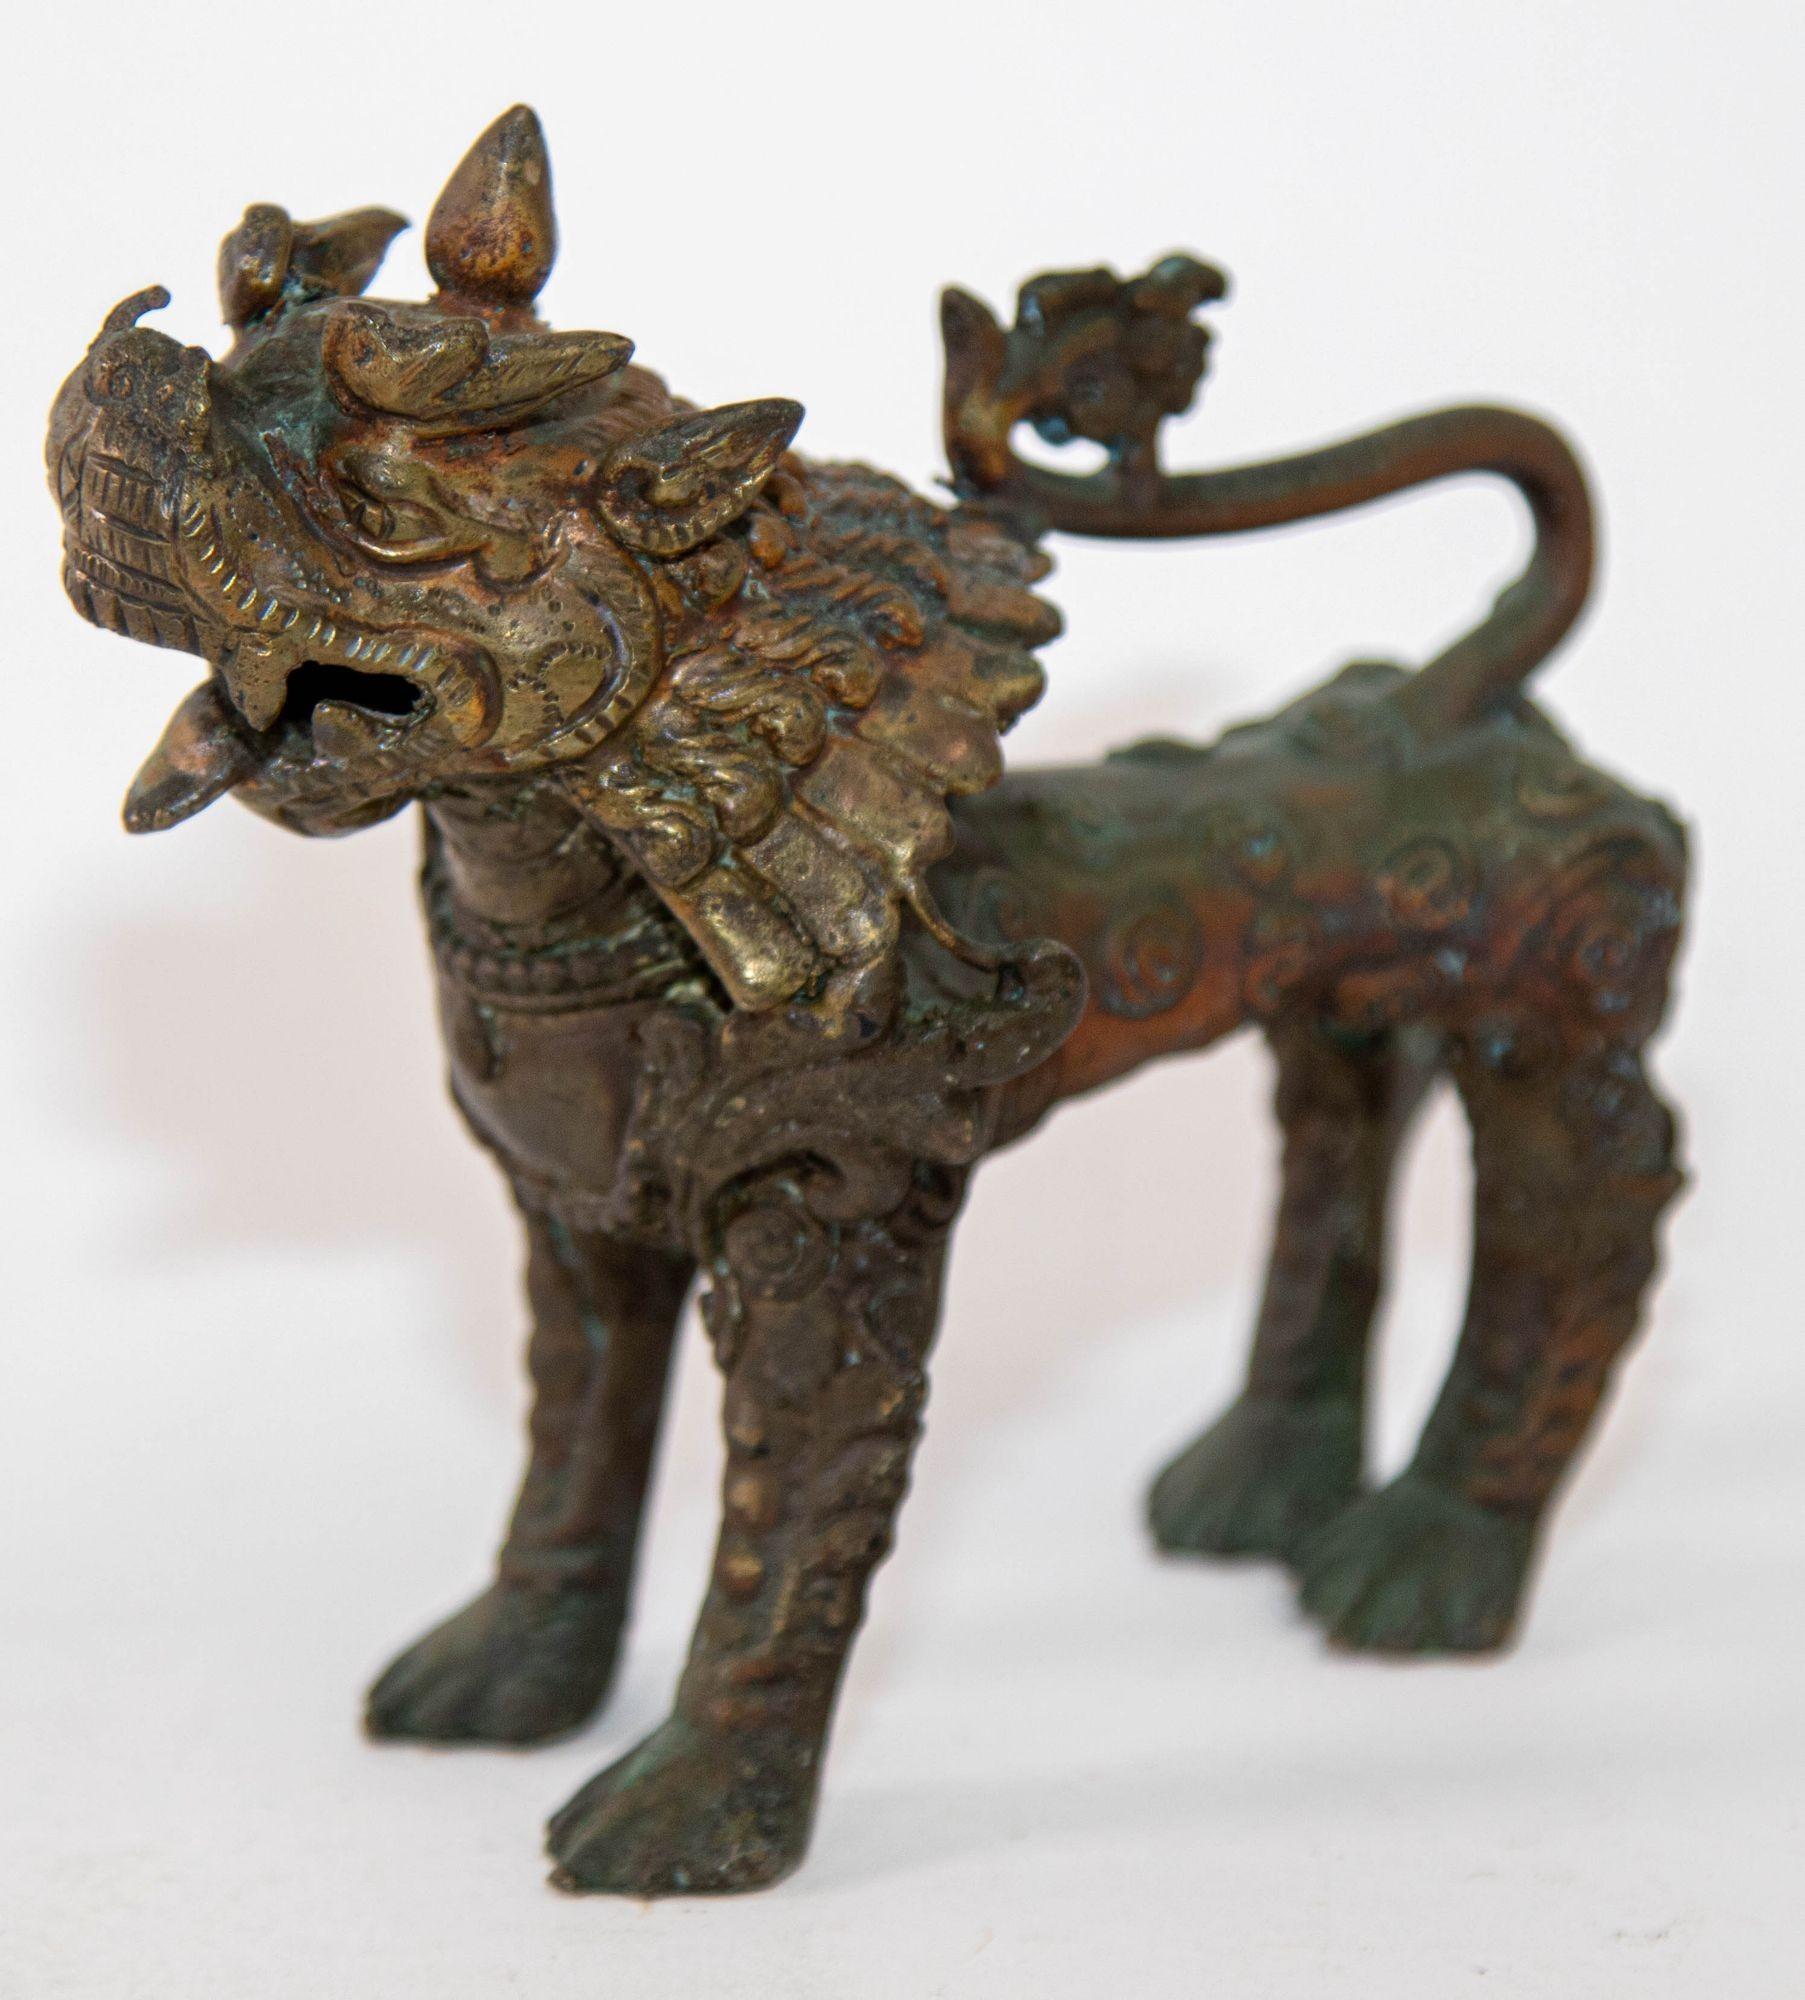 Sculpture asiatique ancienne en bronze de lion gardien, Népal 19ème siècle.
Figure en bronze avec traces de polychromie représentant un lion gardien de temple à la gueule ouverte, à la longue crinière et en position défensive sur ses quatre pattes